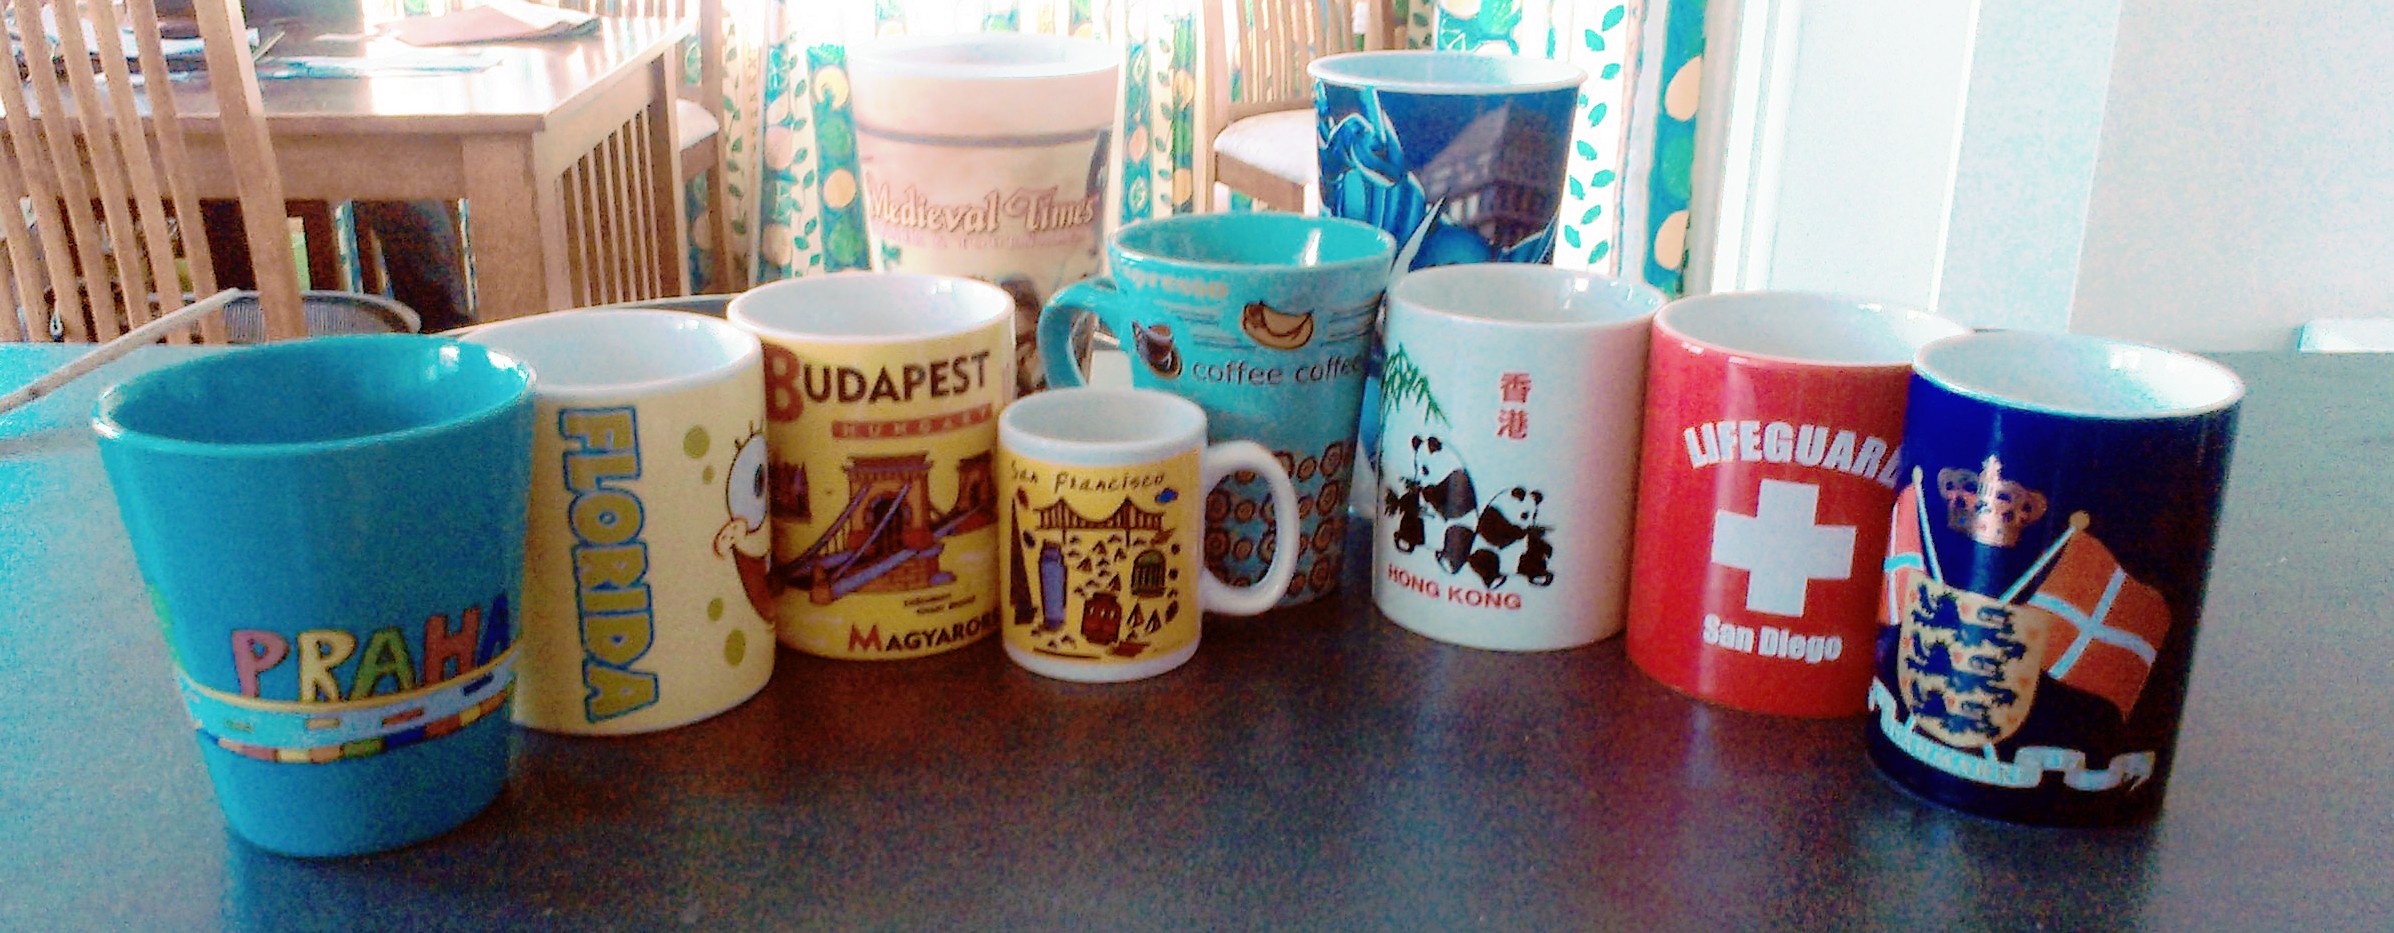 Mugs, mugs, mugs.